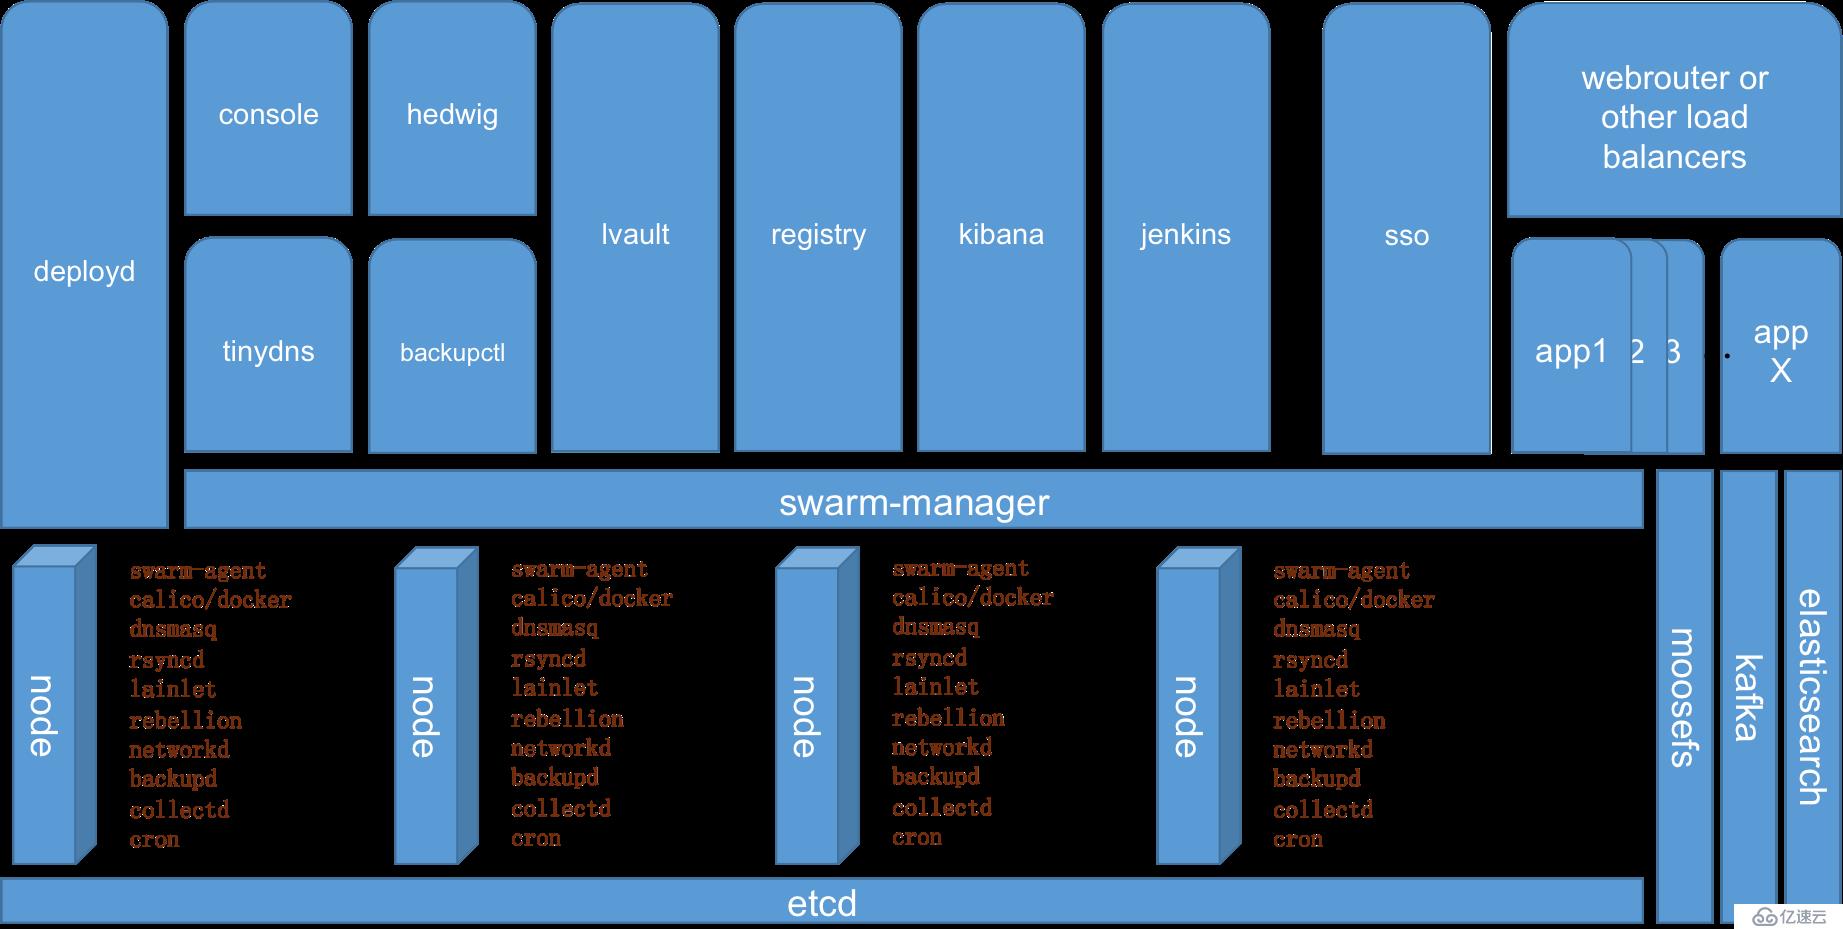 宜信开源|详解PaaS平台LAIN的功能和架构